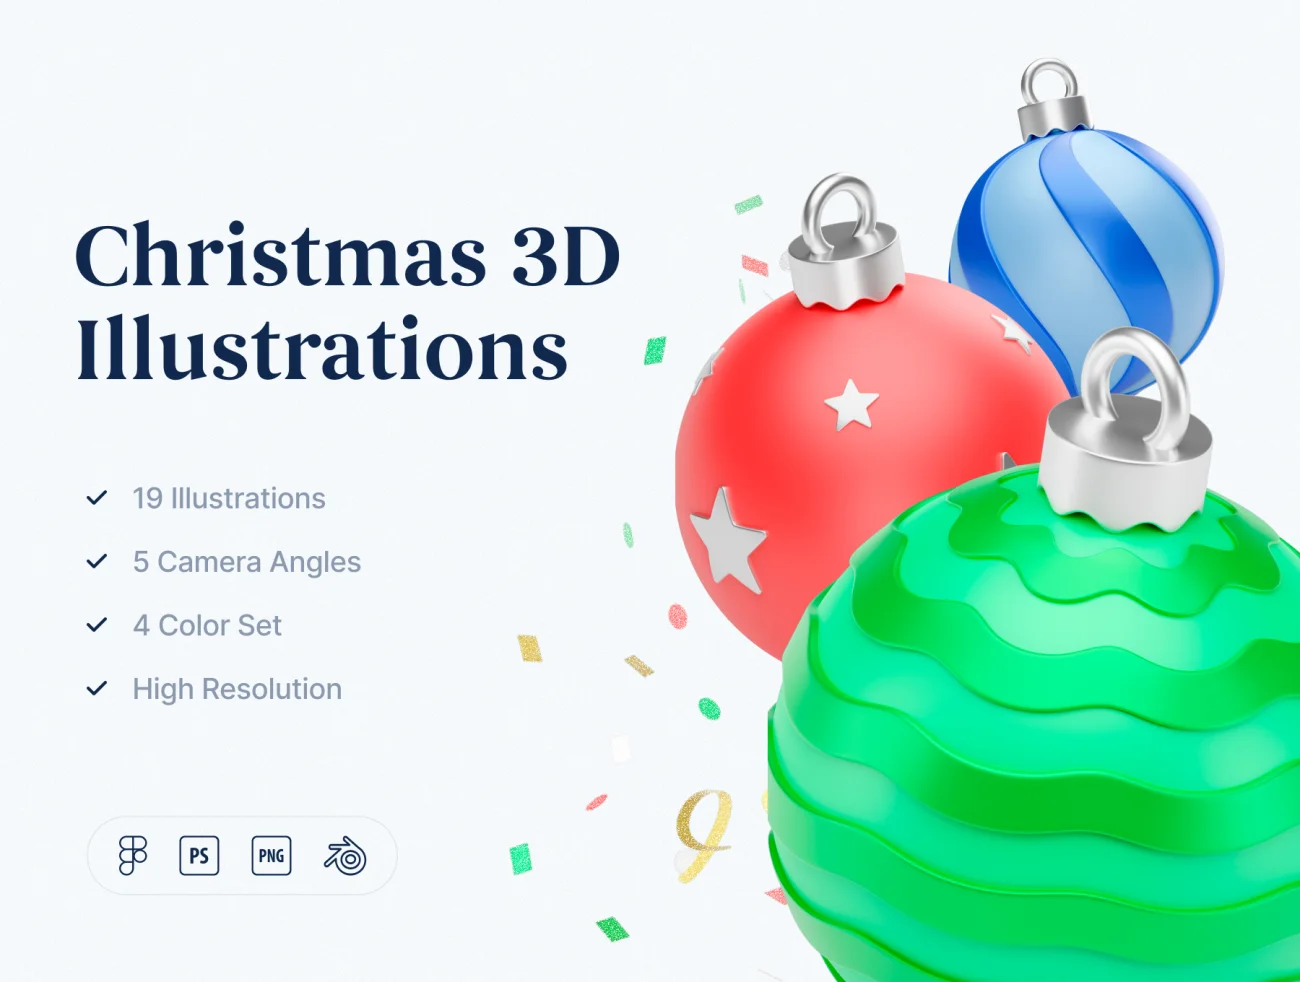 19款圣诞节3D图标合集素材下载 Christmas 3D Illustrations .blender .psd .figma插图1